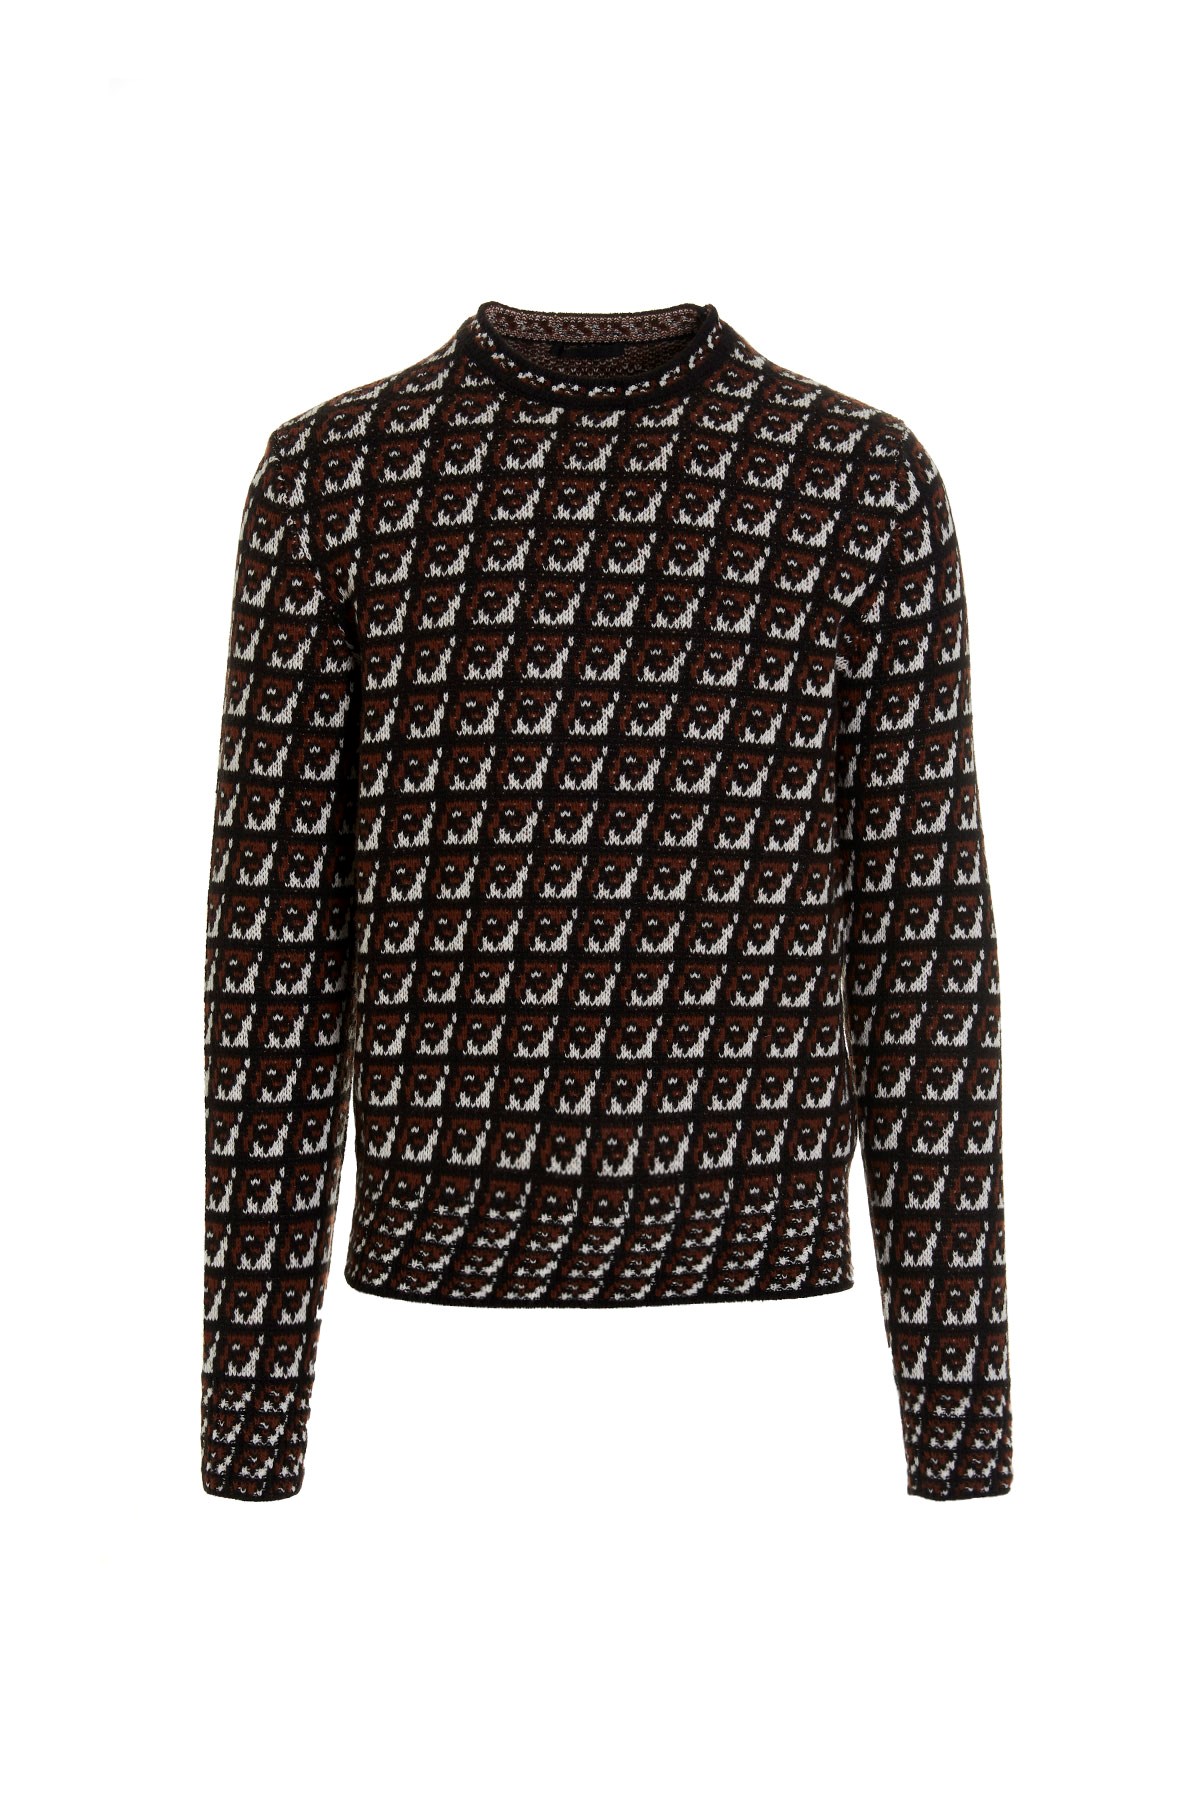 PRADA Geometric Intarsia Sweater